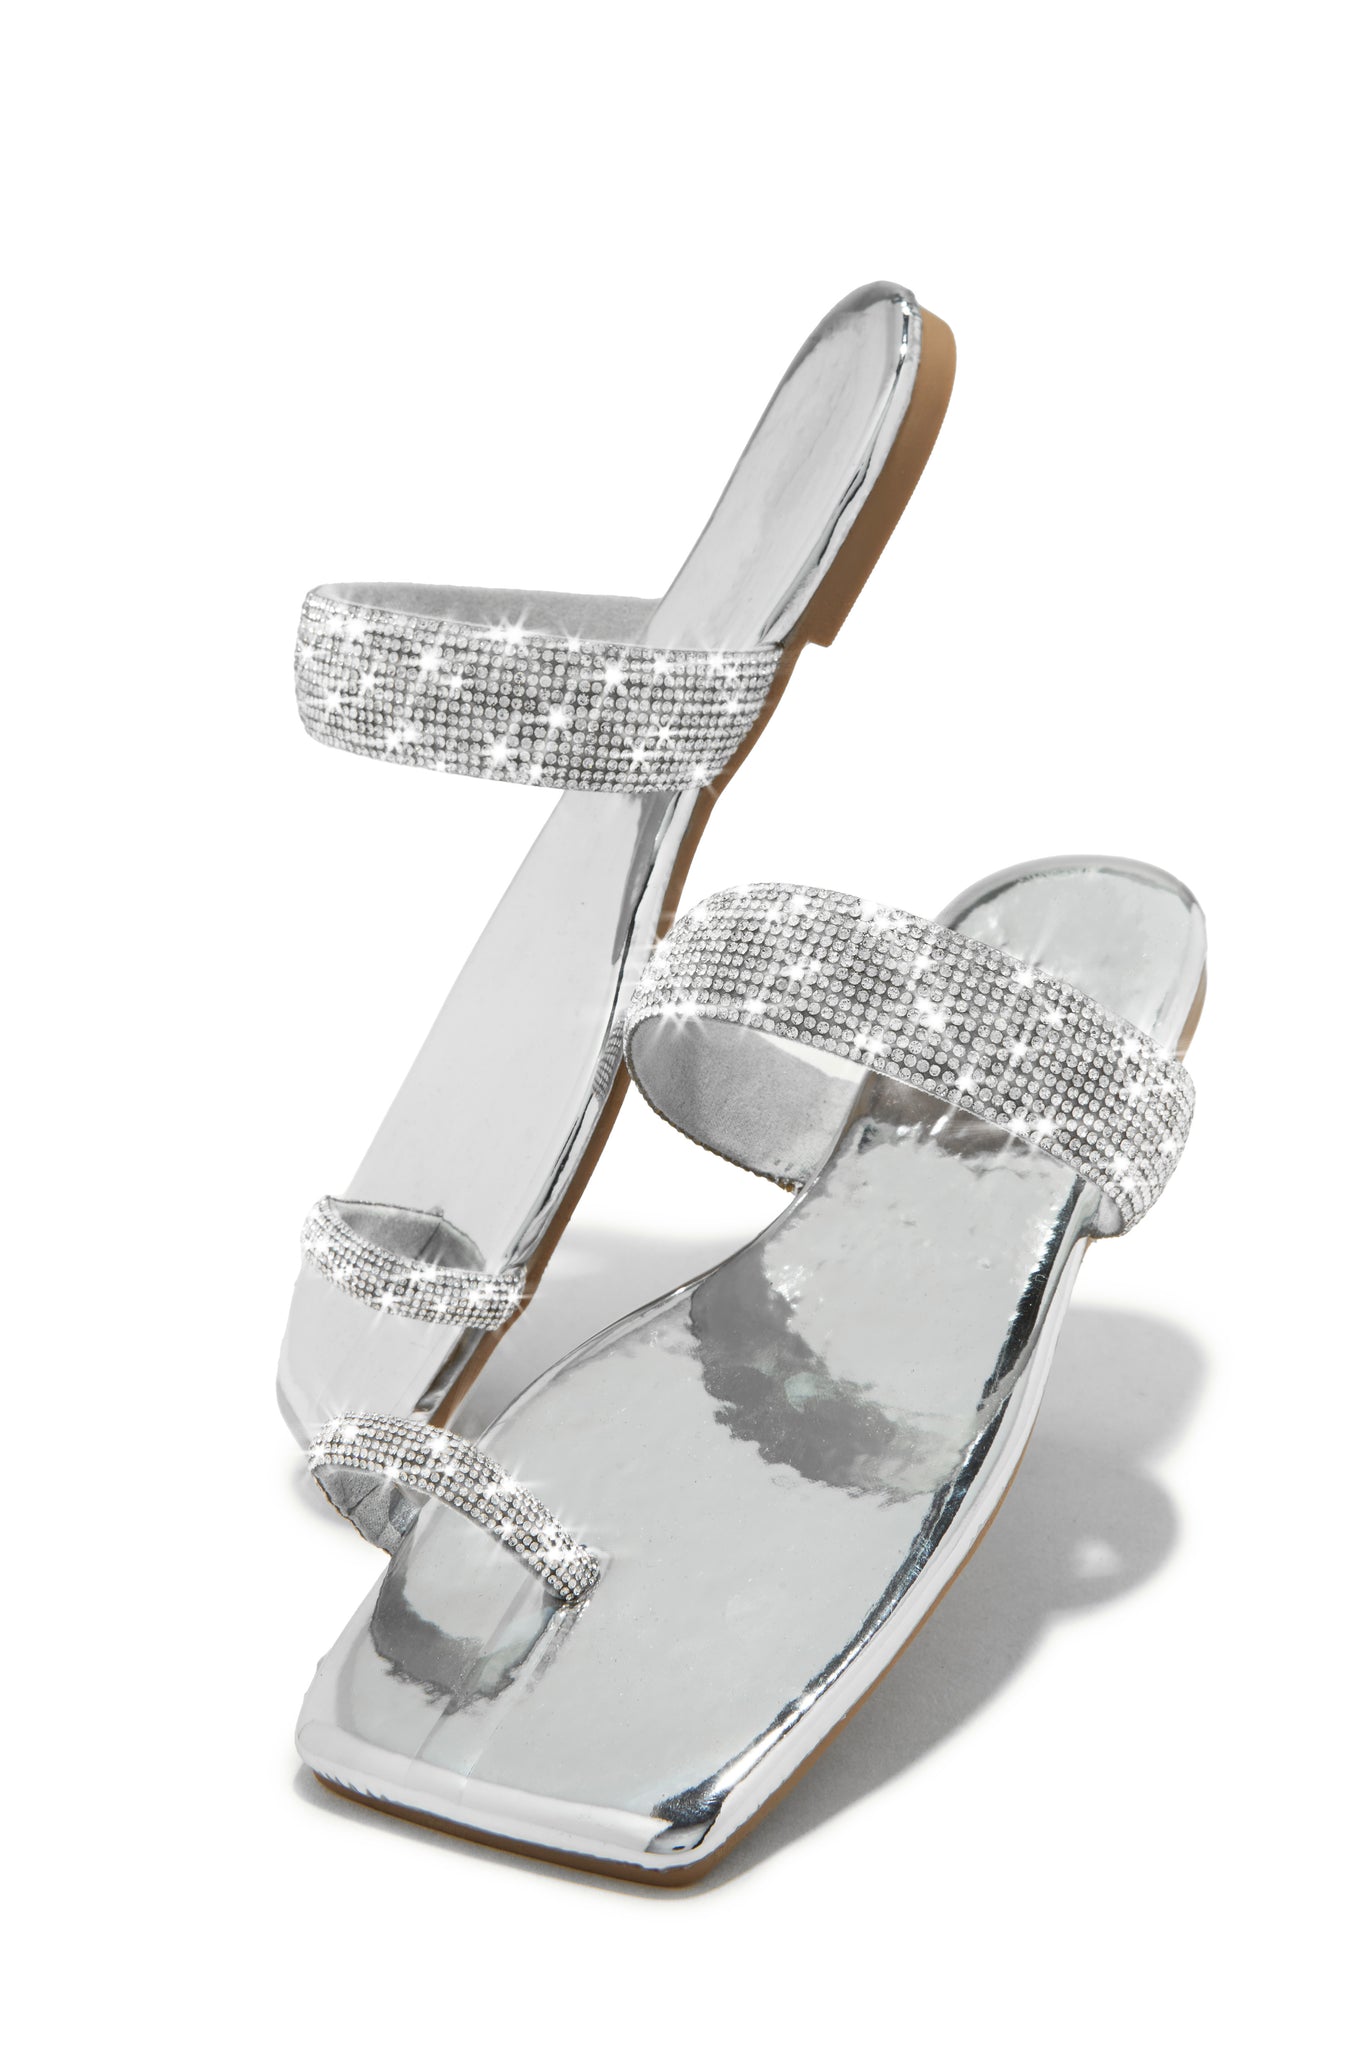 I. Miller Women's Silver Sparkly Metallic Glitter Strappy Sandals Heels  Size 10M | eBay